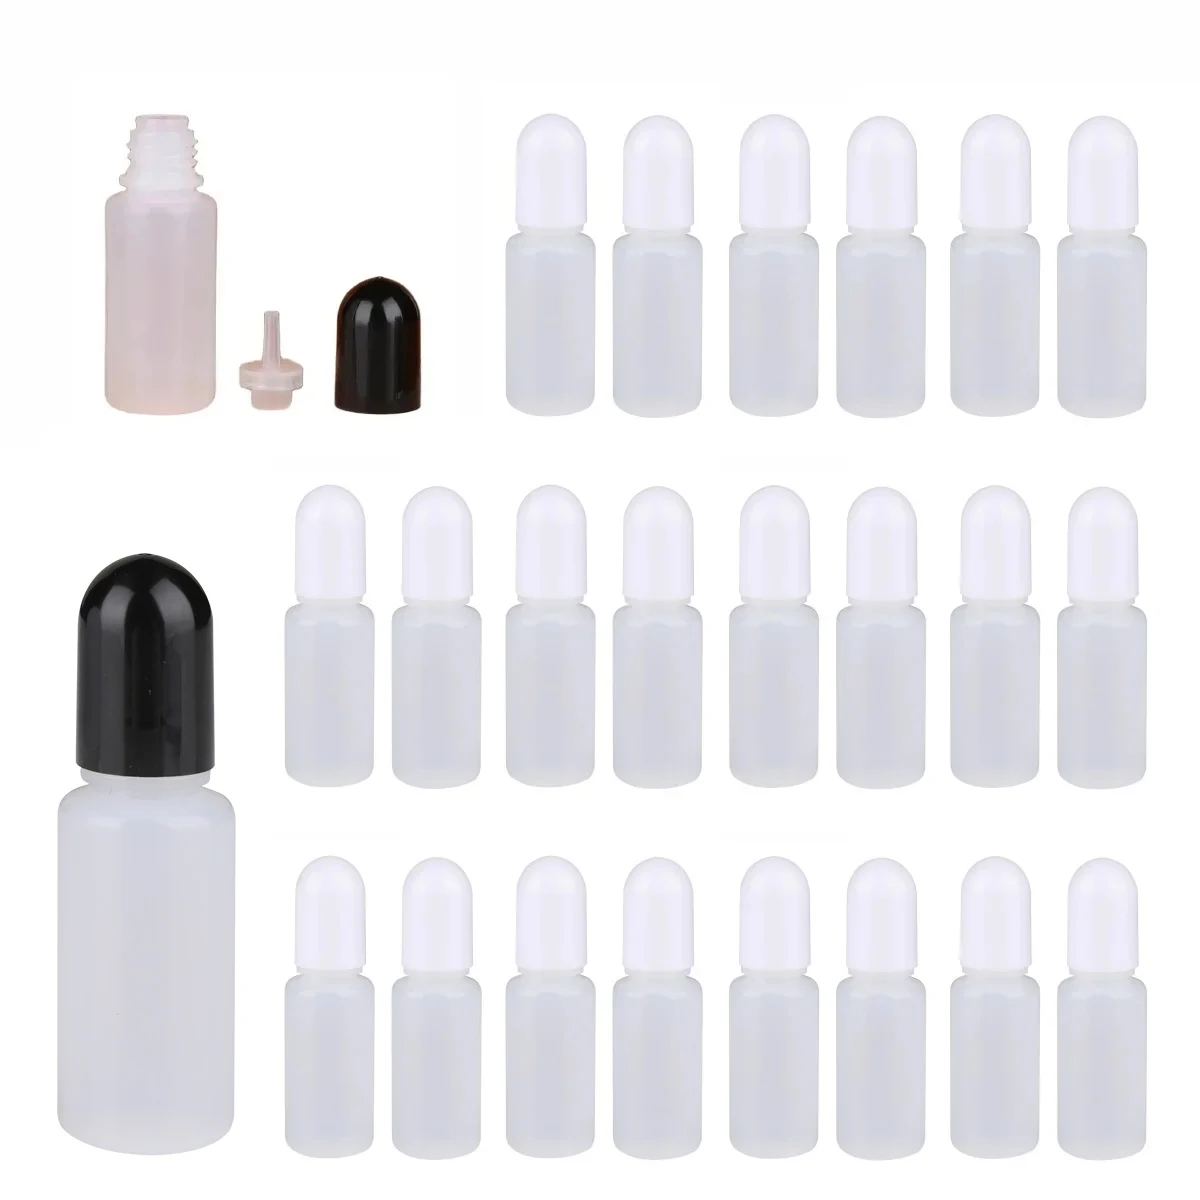 

Whosale 5ml 10ml 15ml 20ml Empty Plastic Dropper Bottle Paint Beauty Vape Oil Squeezable Refillable Bottle Cosmetics Storage